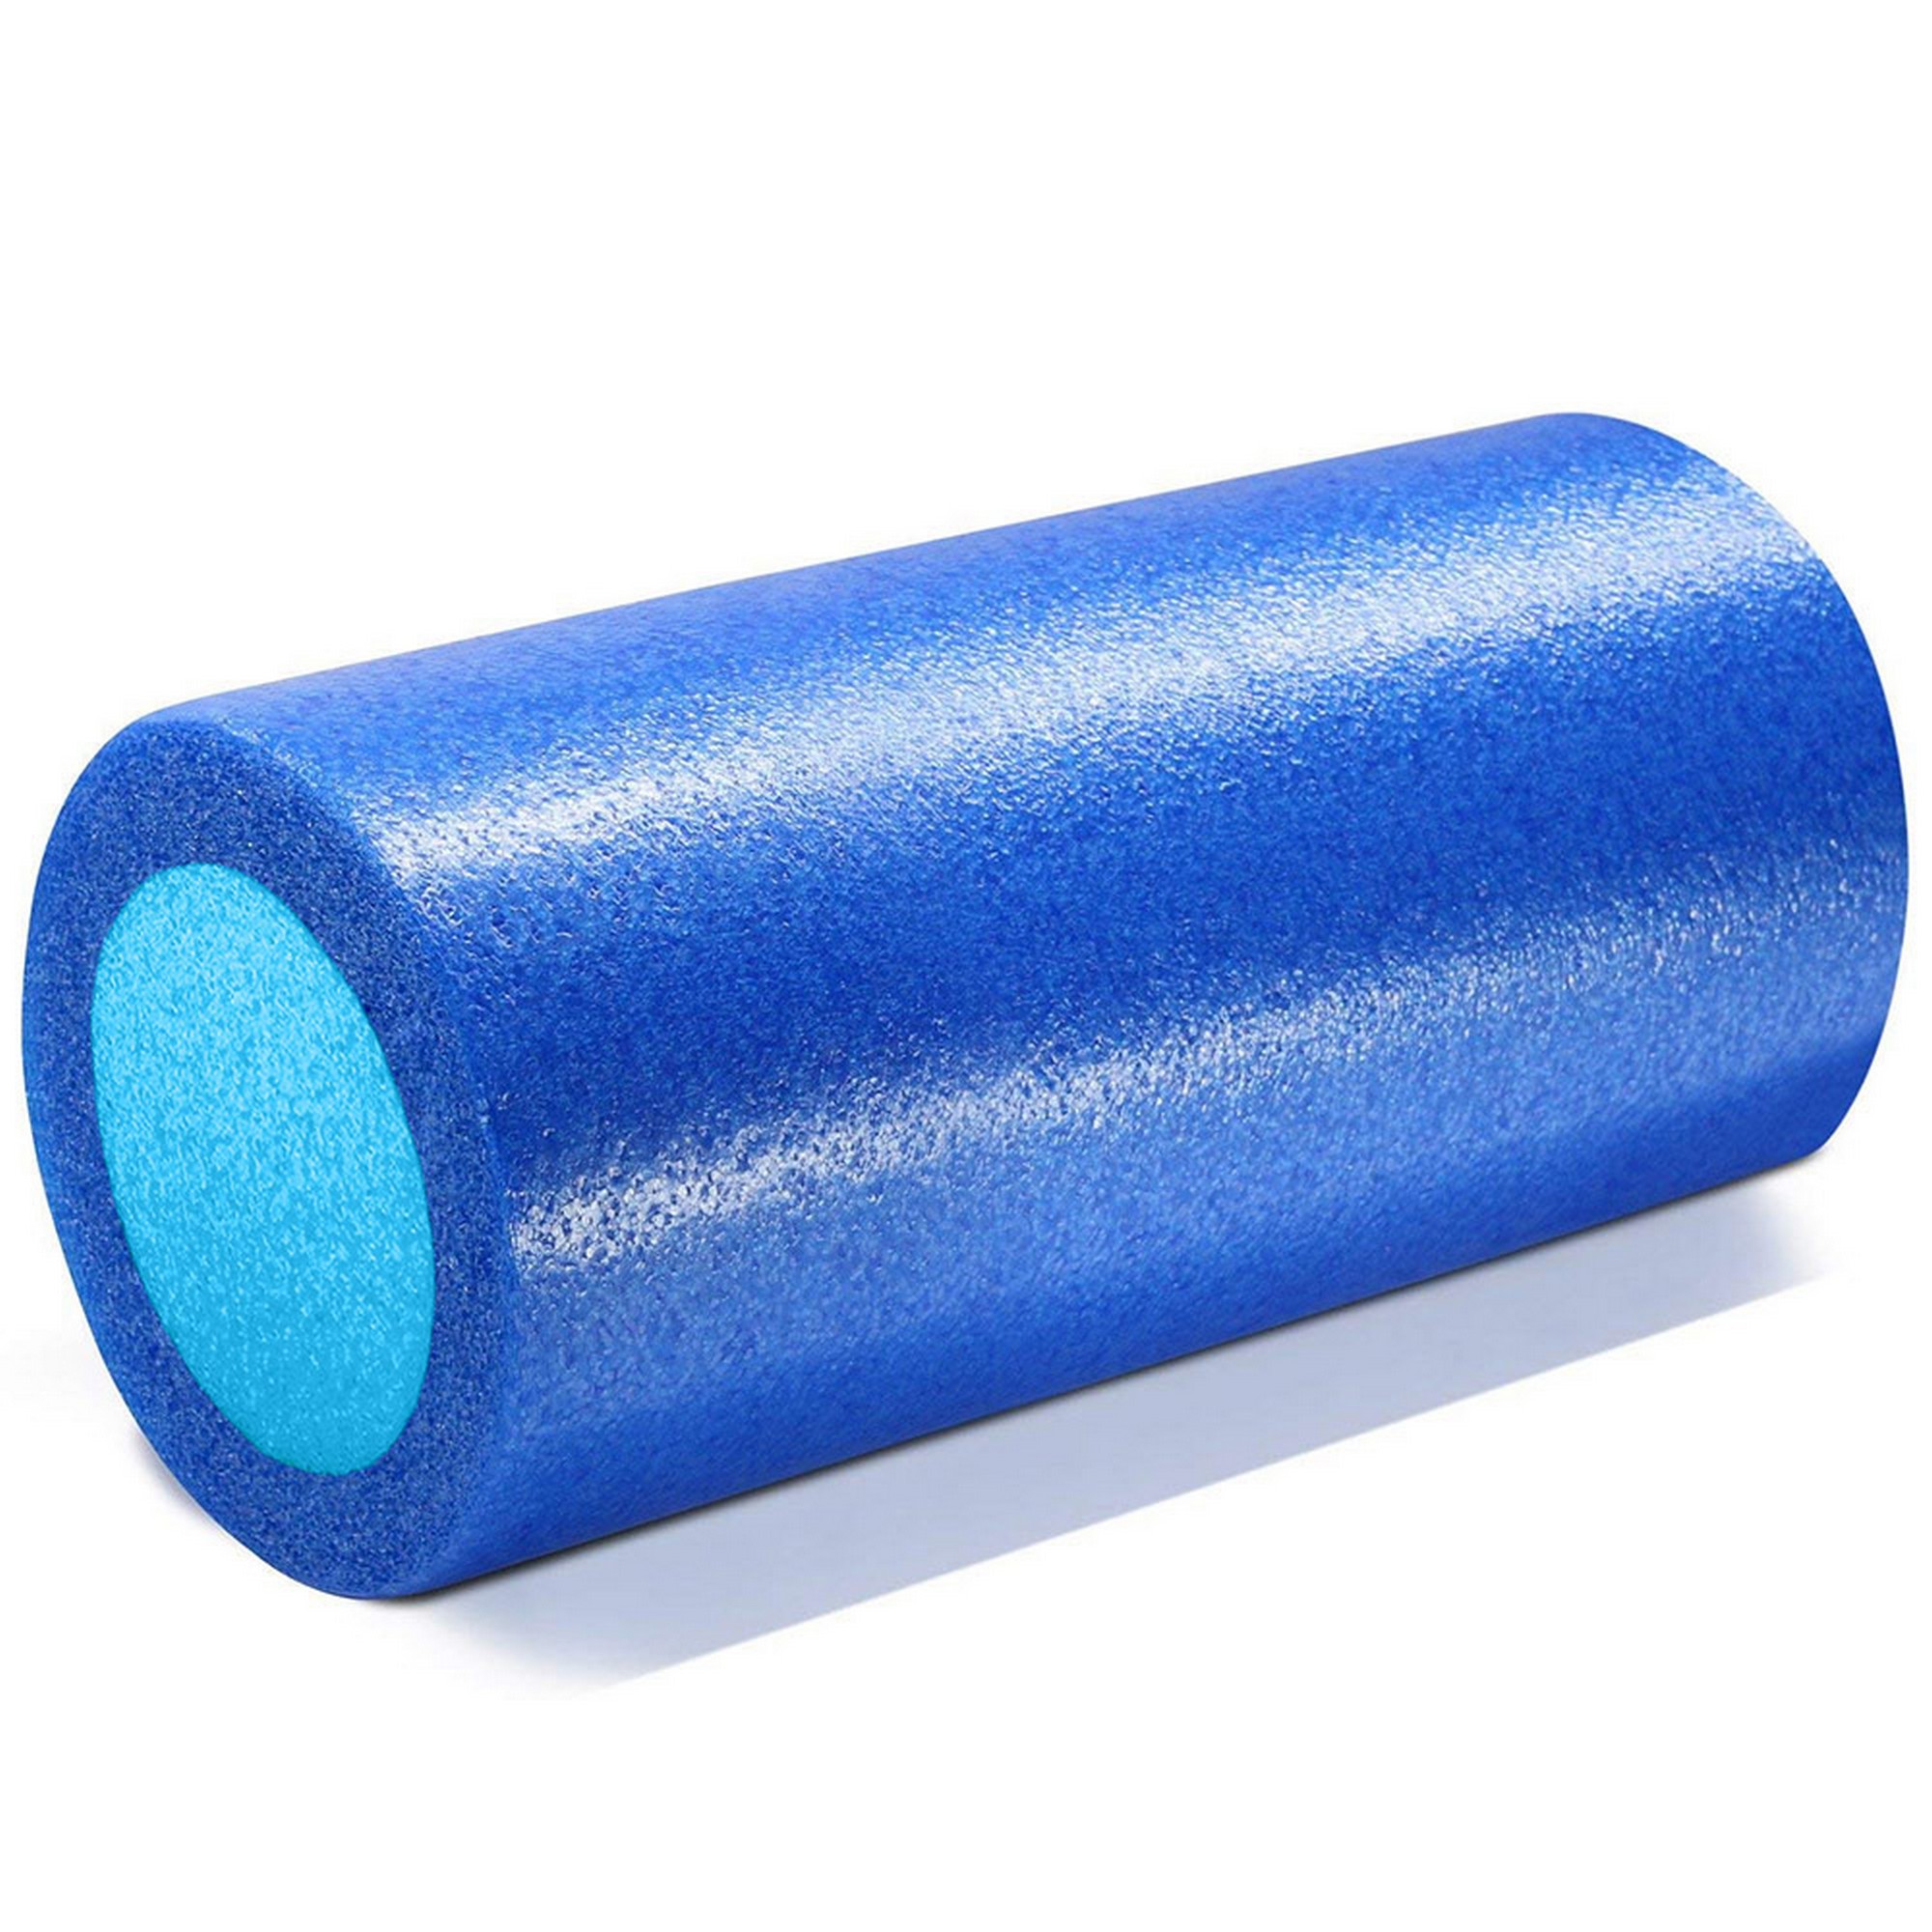 Ролик для йоги полнотелый 2-х цветный, 30х15см Sportex PEF30-A синий\голубой 2000_2000